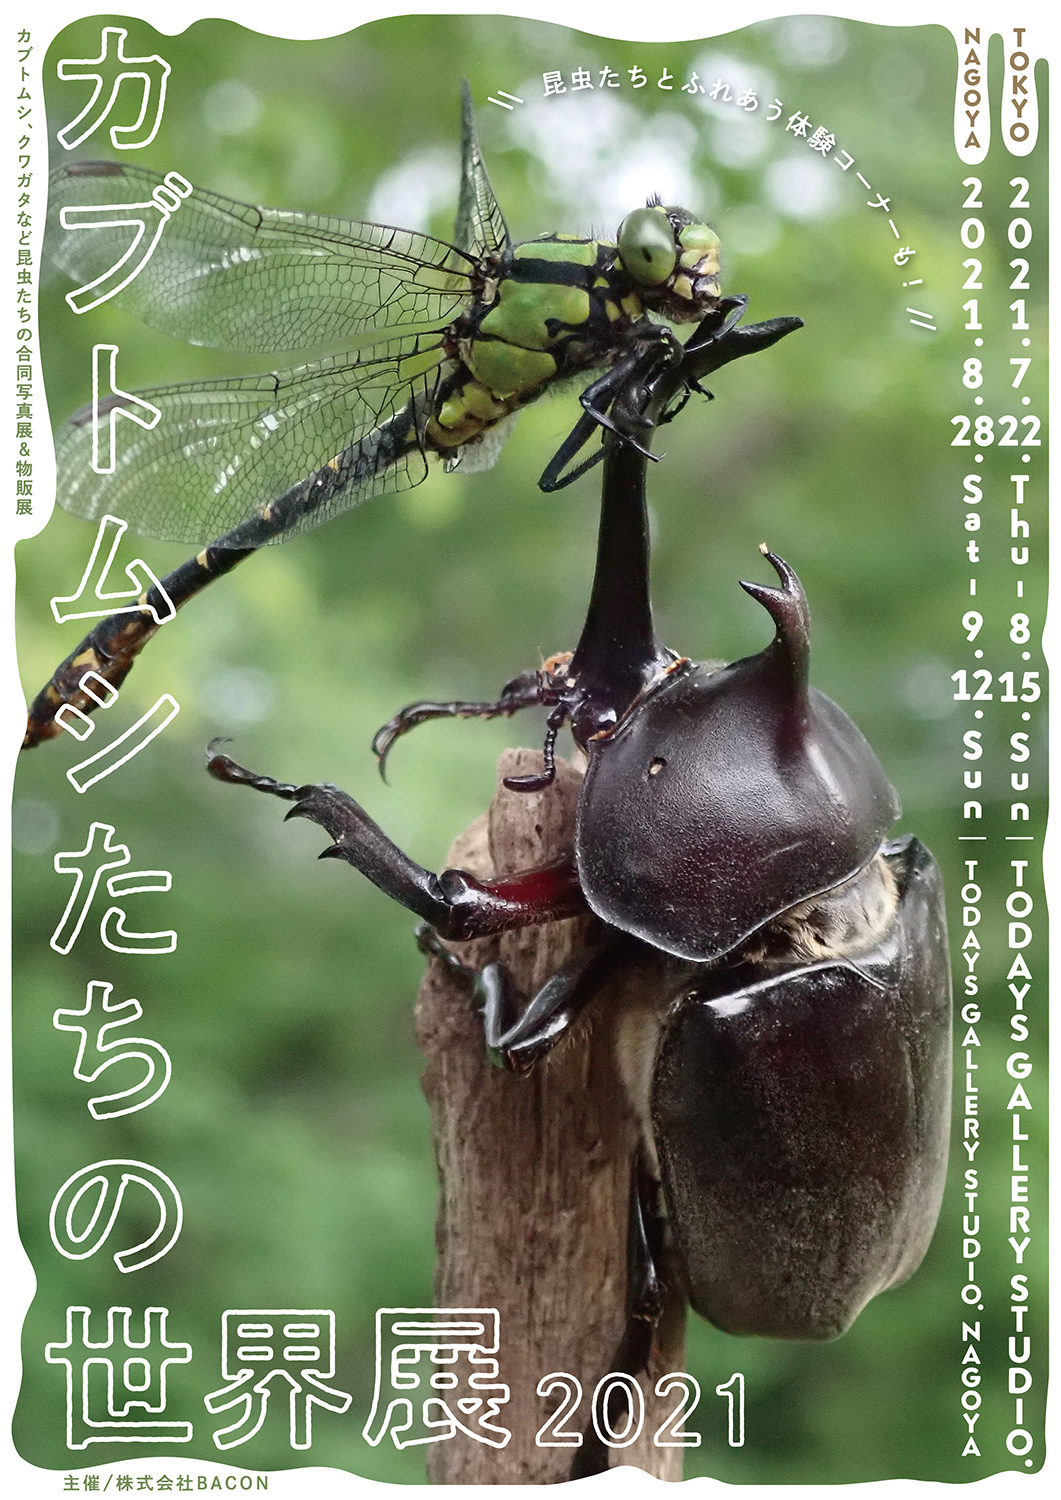 カブトムシやクワガタなど昆虫たちの合同写真展＆物販展「カブトムシたちの世界展 2021」 | 台東区浅草橋のギャラリー「TODAYS GALLERY  STUDIO」